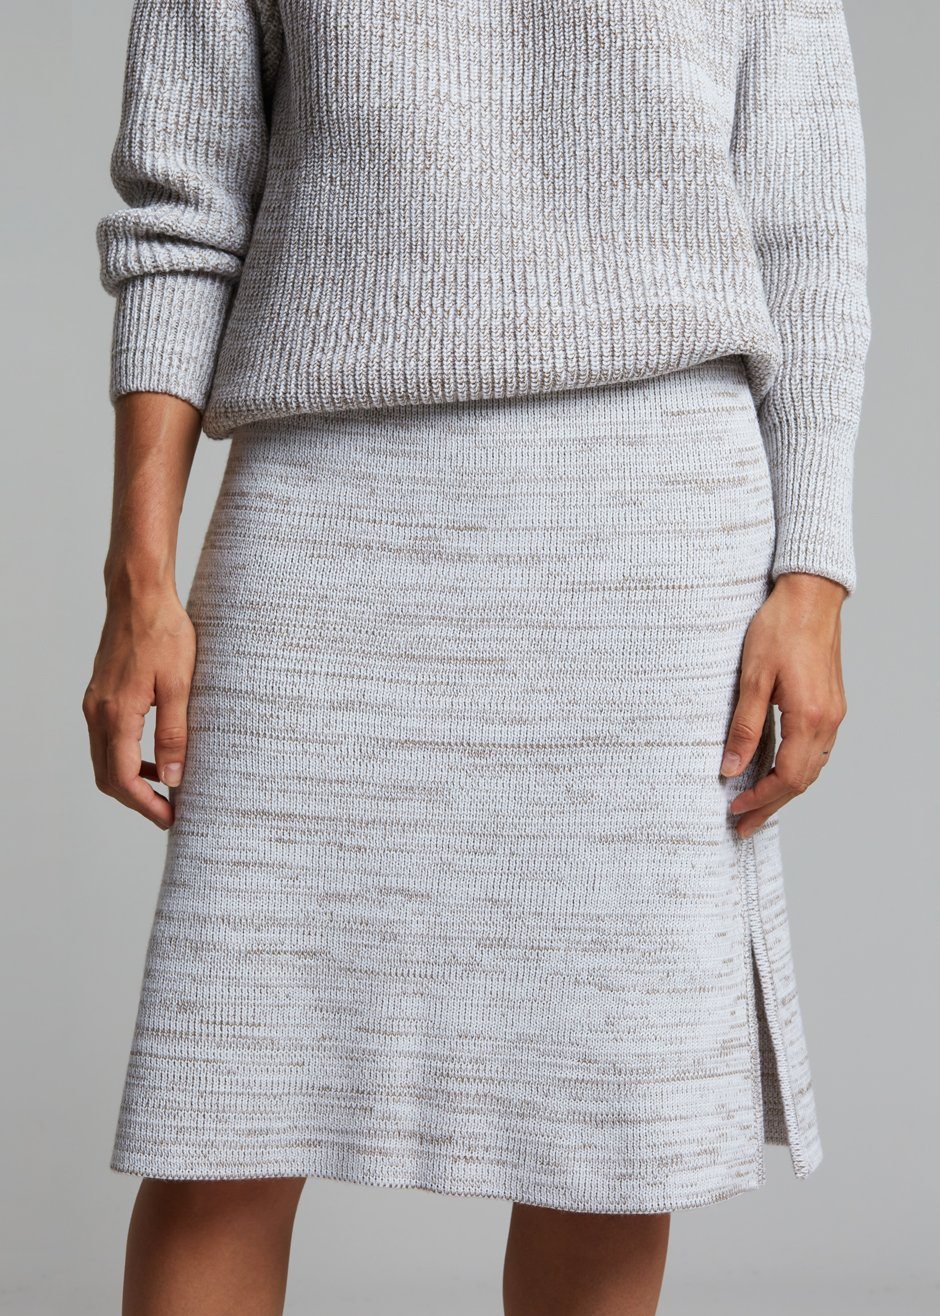 Bevza Knitted Skirt - Light Beige Melange - 4